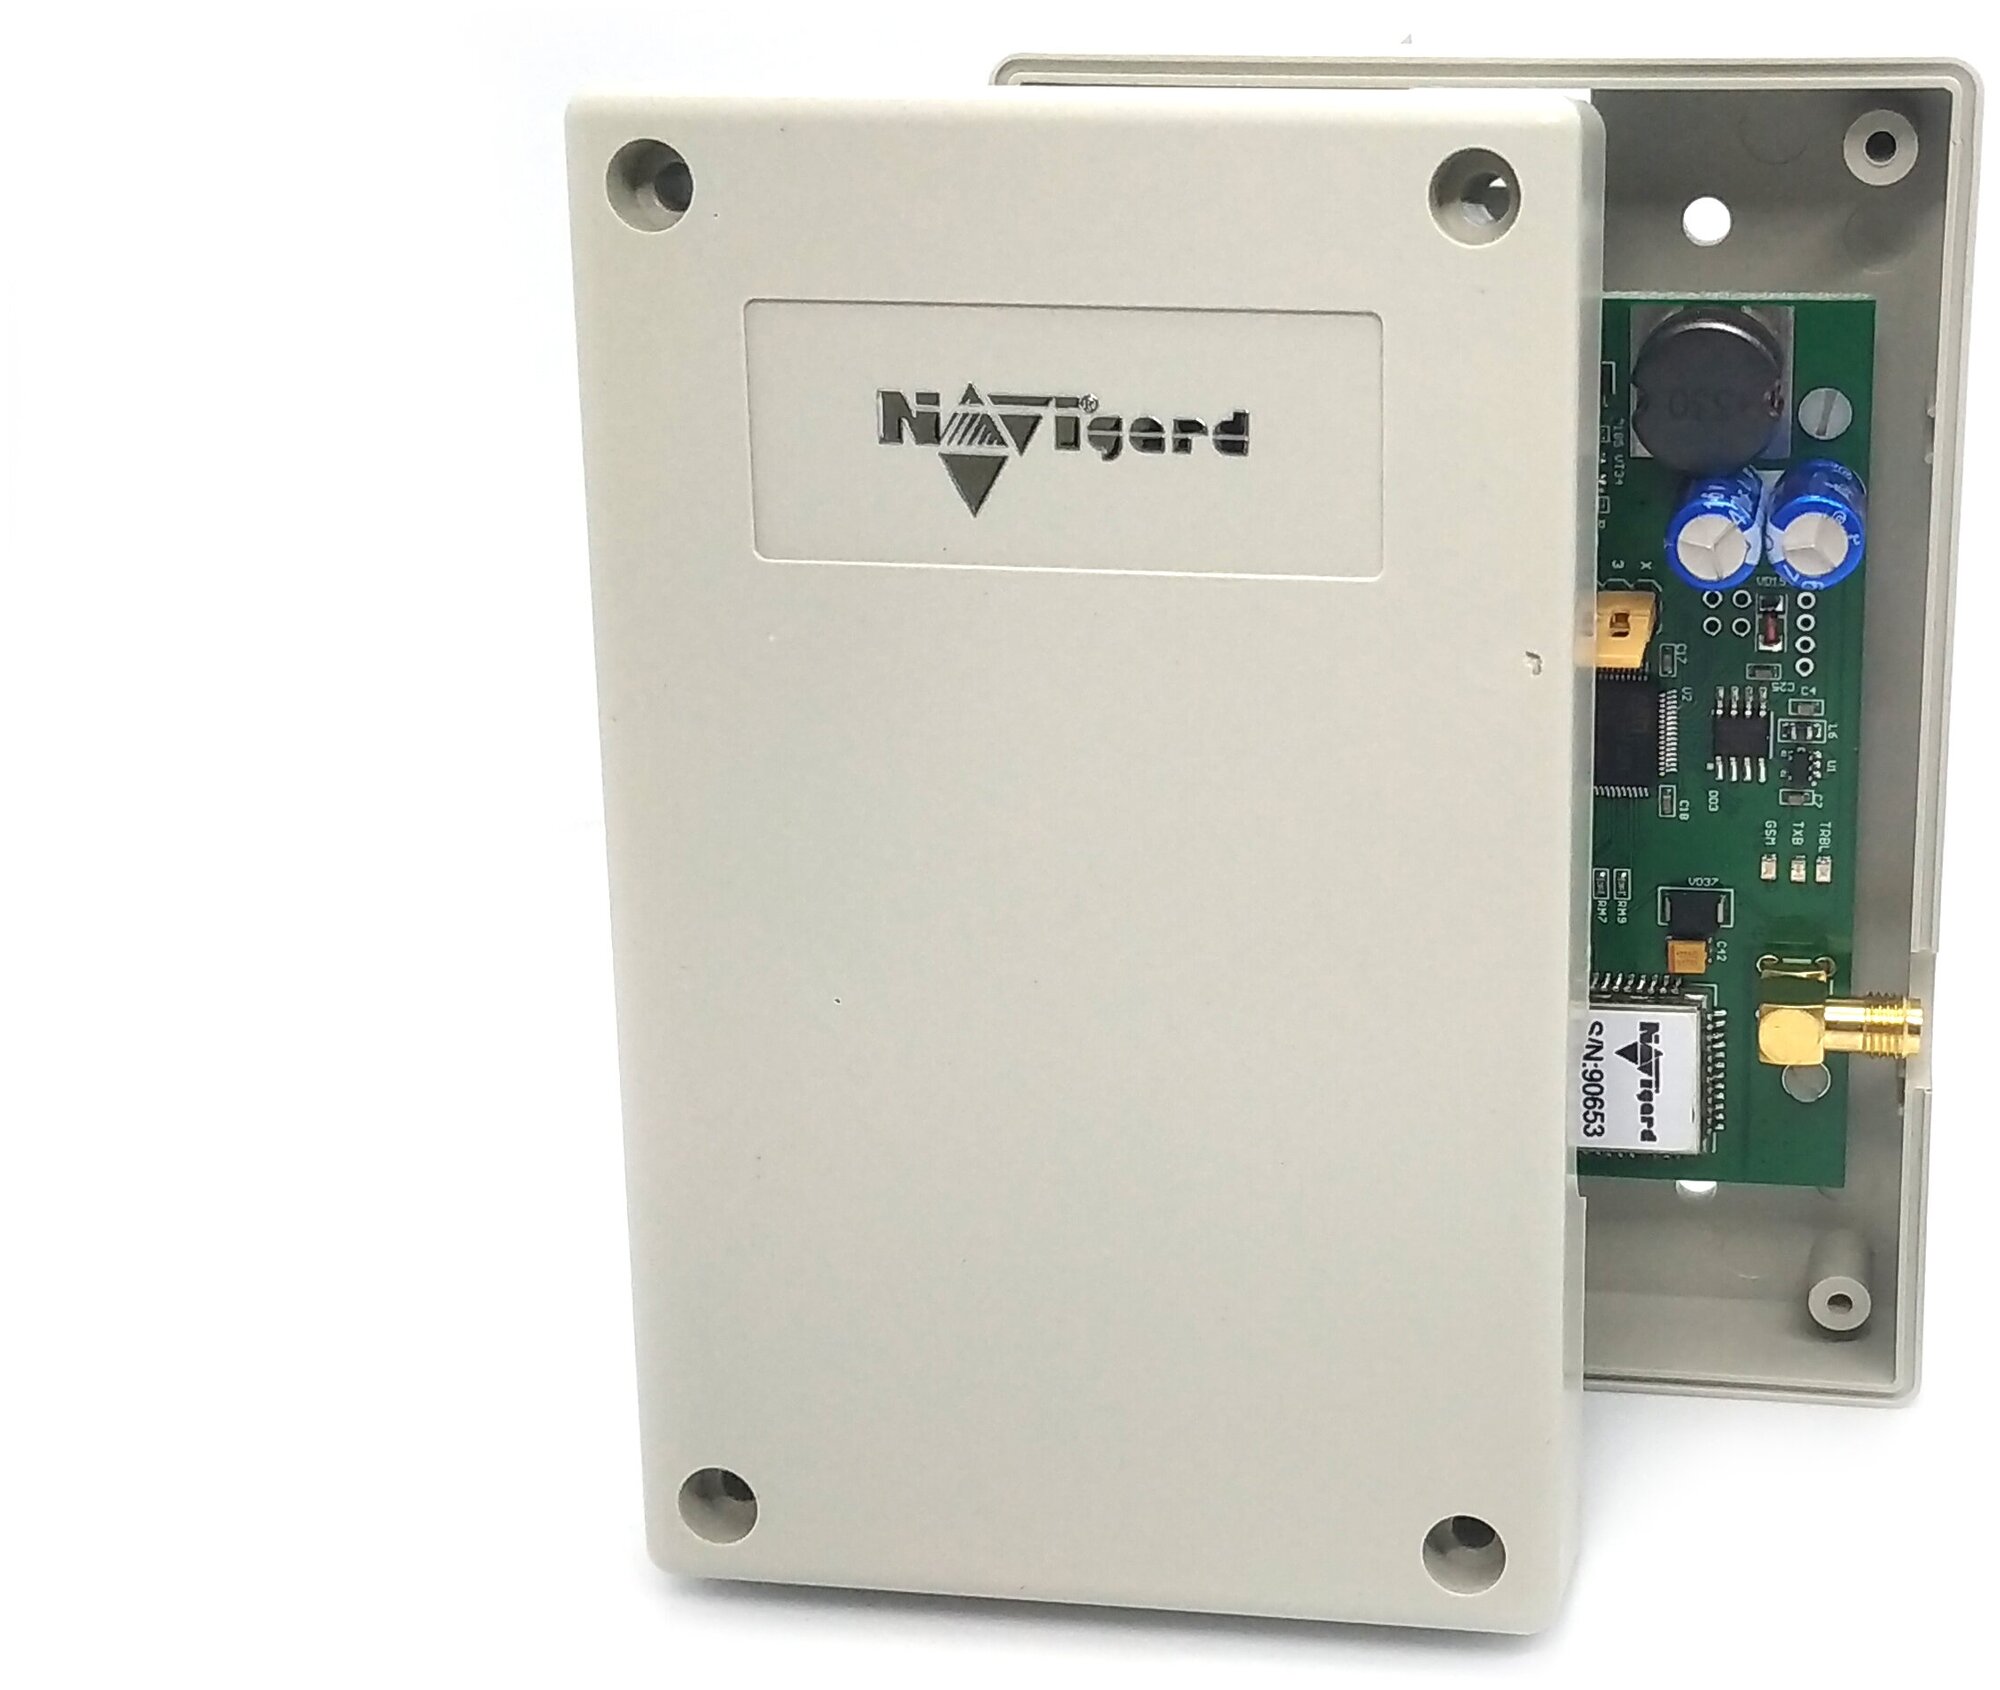 NV 1025 GSM контроллер для управления приводами ворот и шлагбаумов